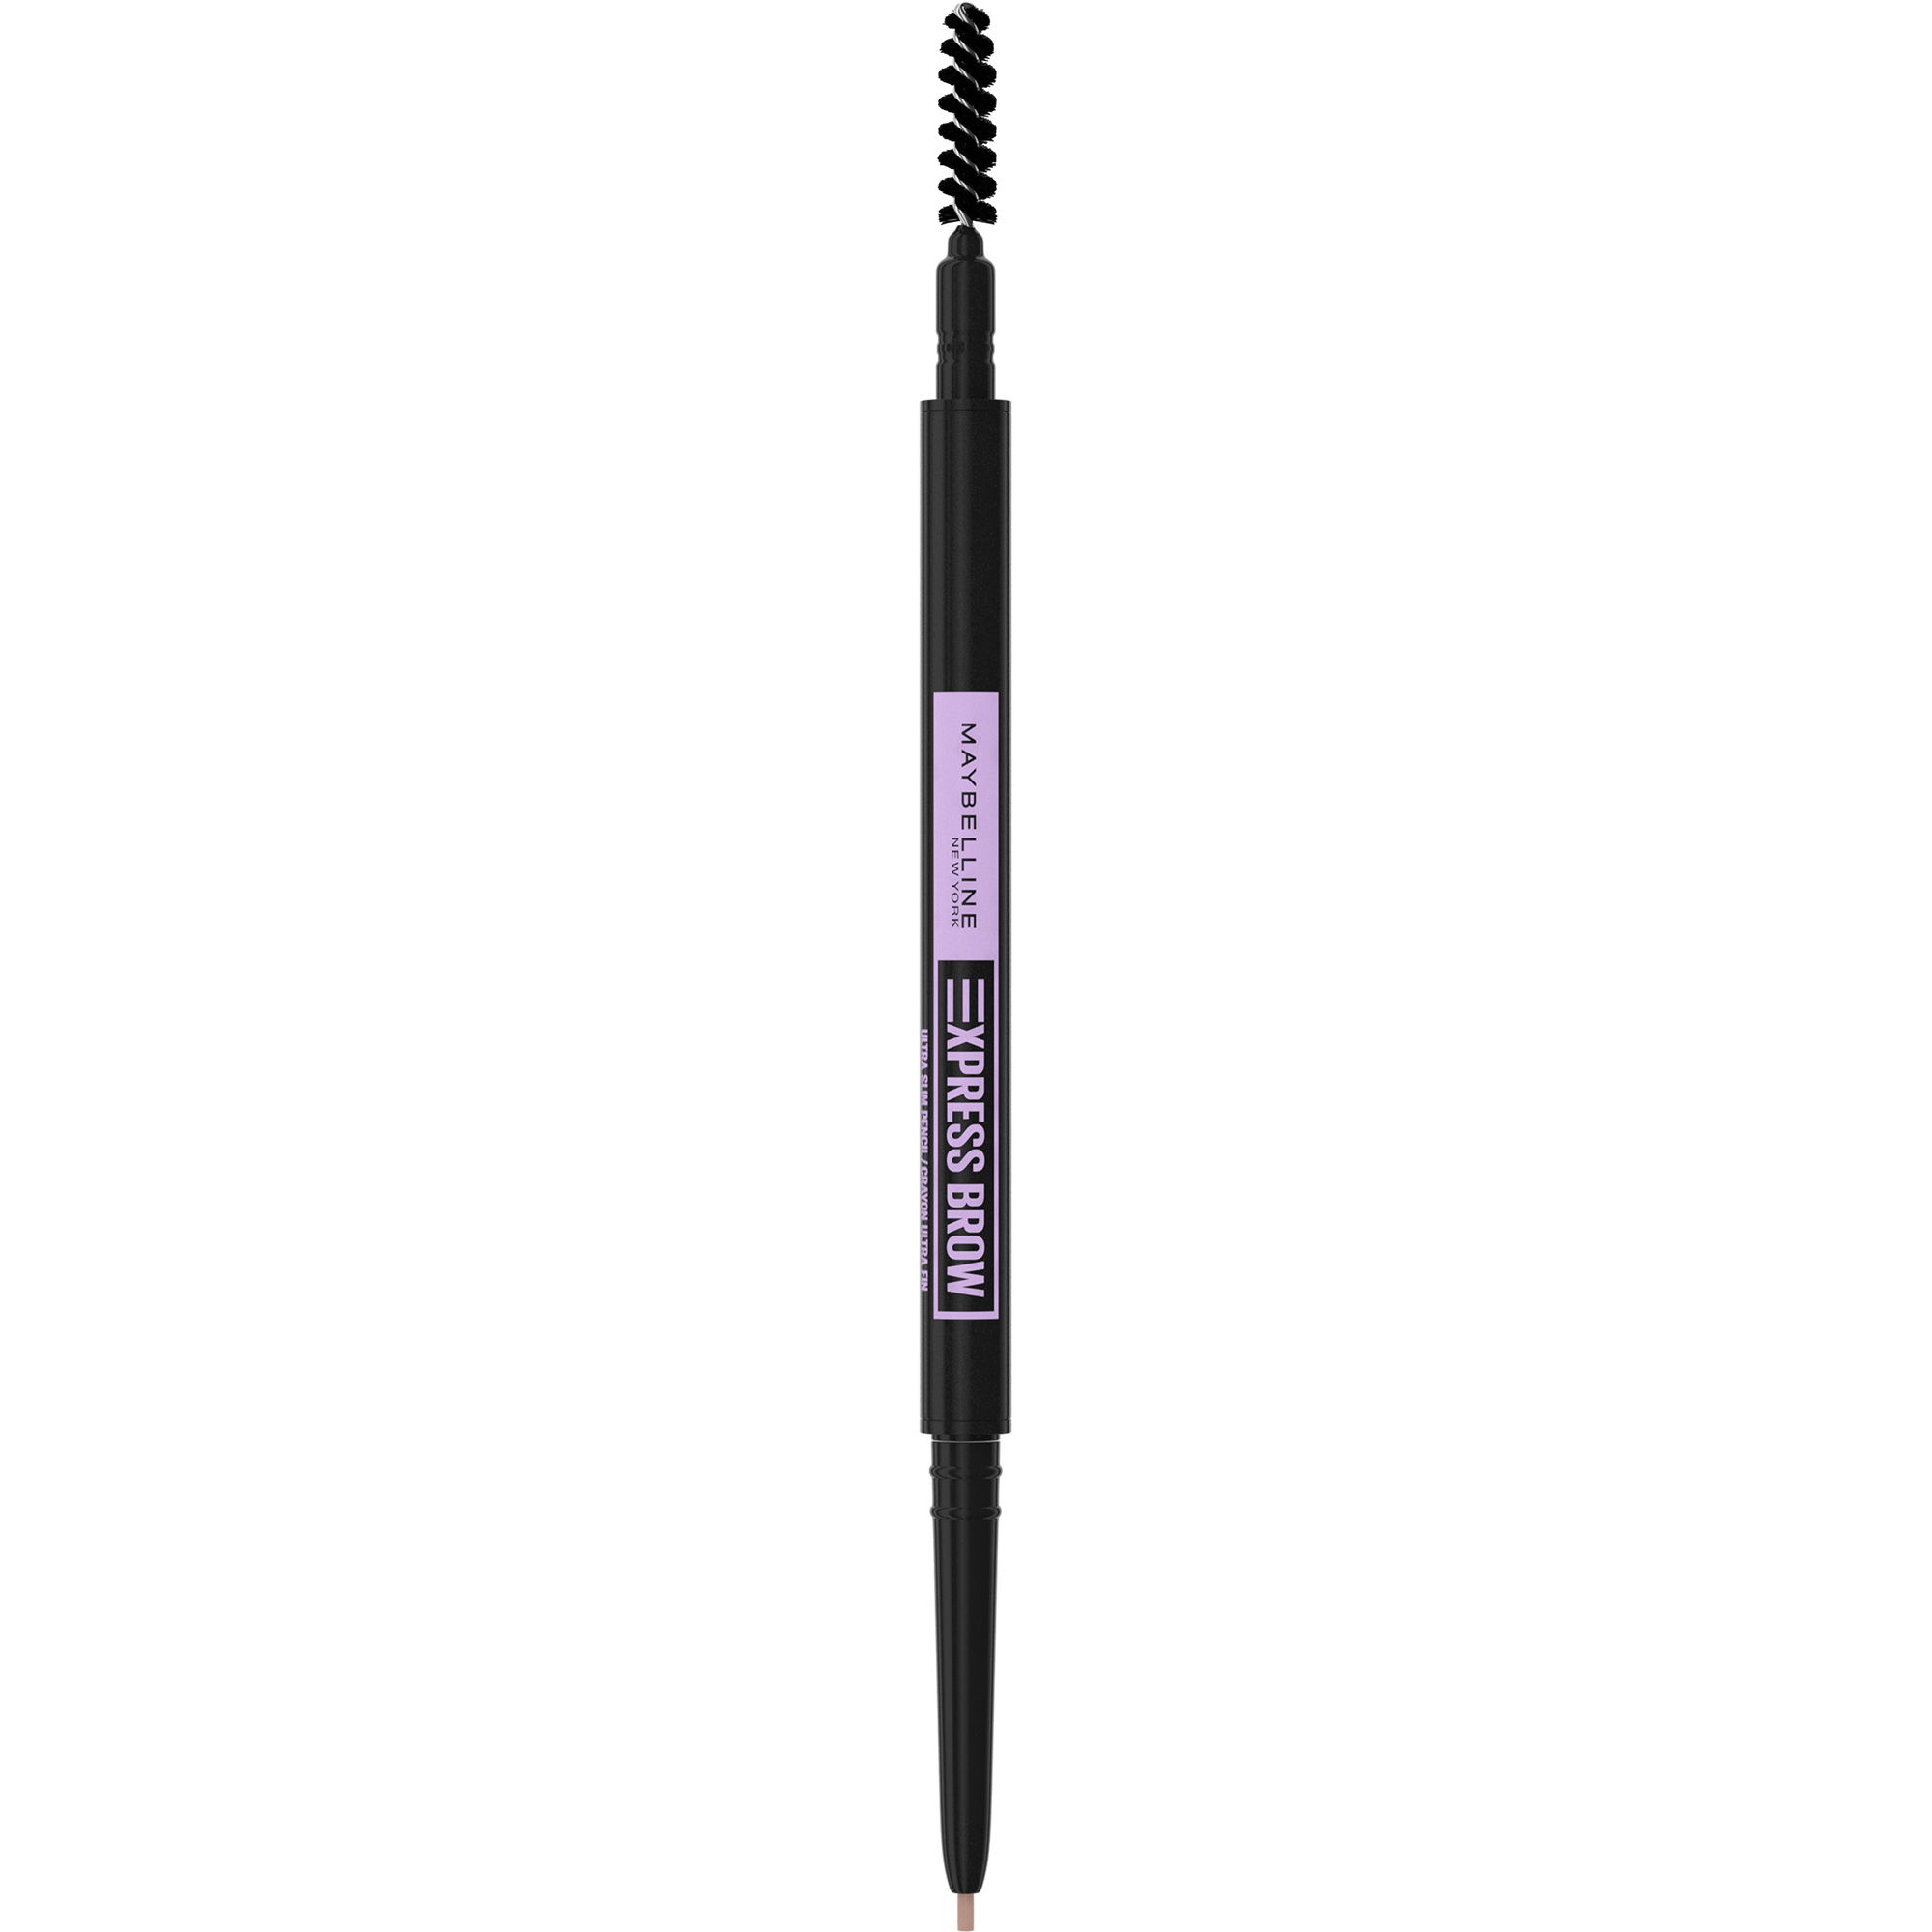 Creion pentru definirea sprancenelor Express Brow Ultra Slim, 1.5 Taupe, Maybelline